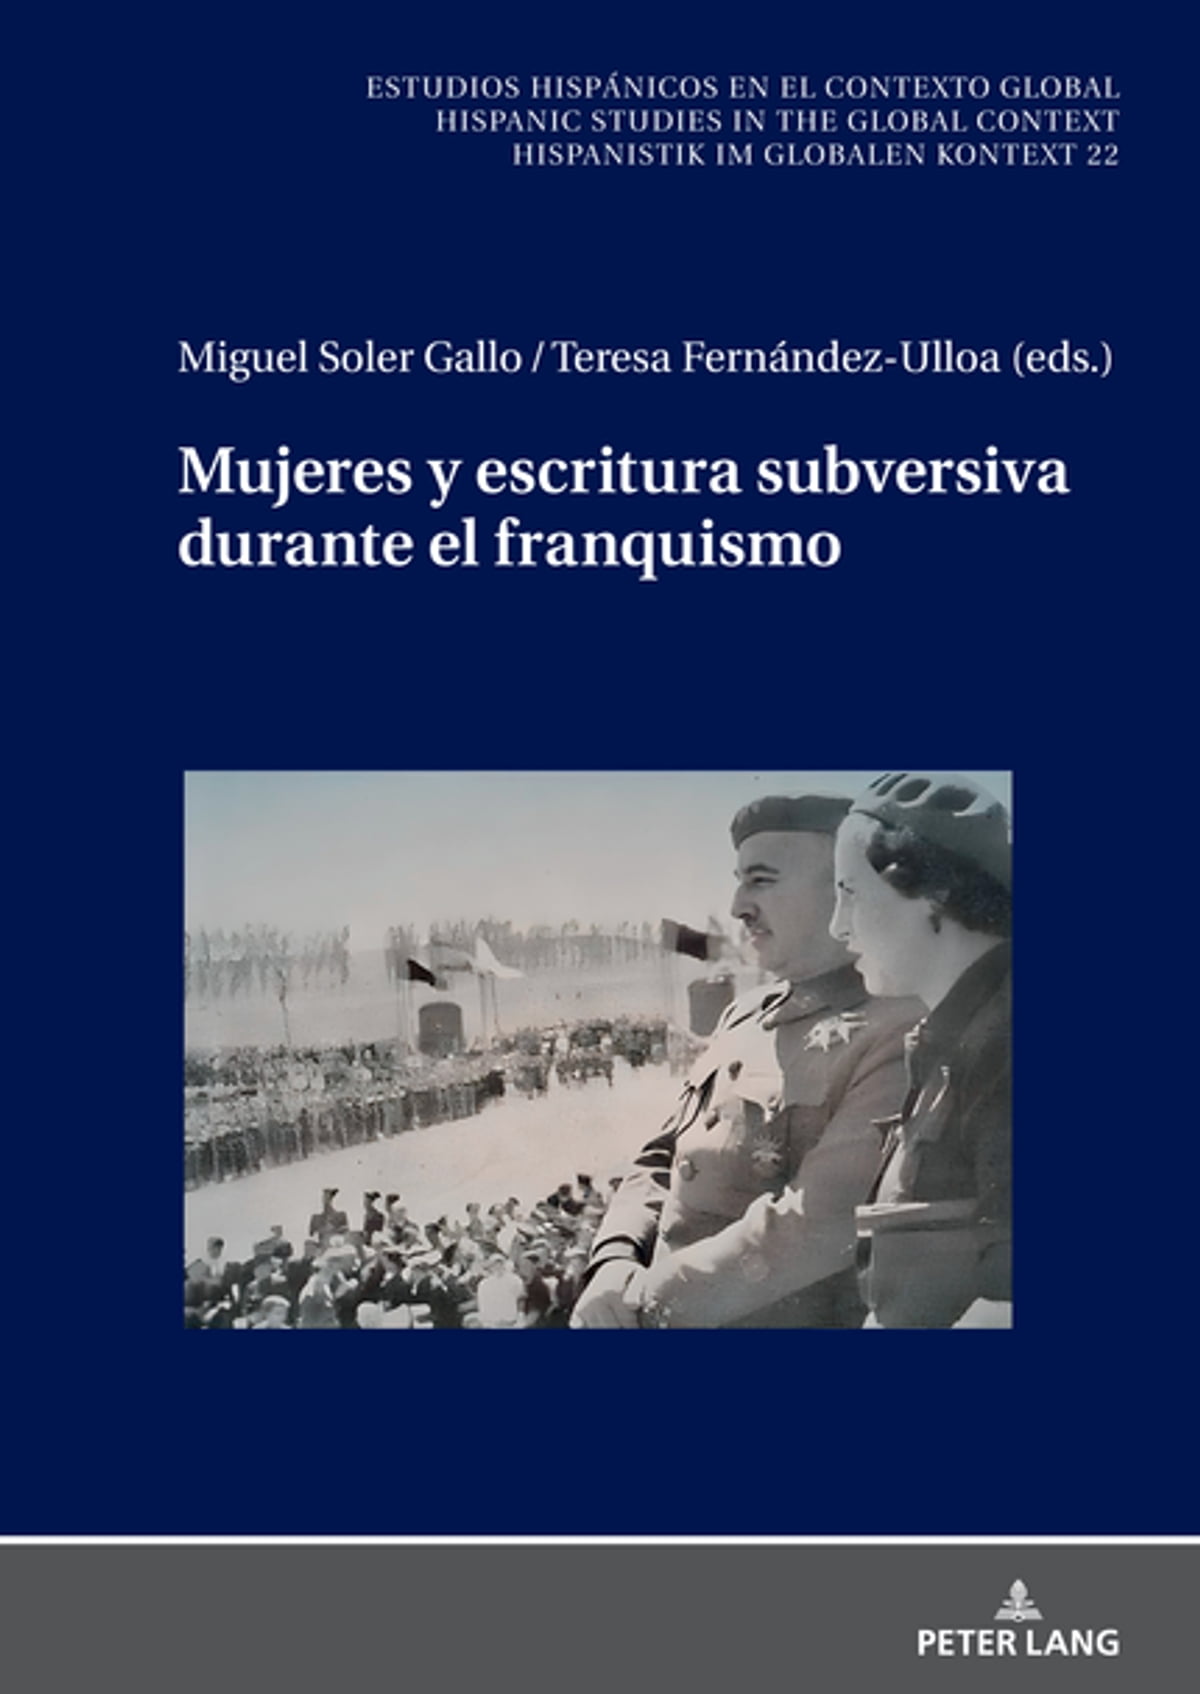 Imagen de portada del libro Mujeres y escritura subversiva durante el franquismo